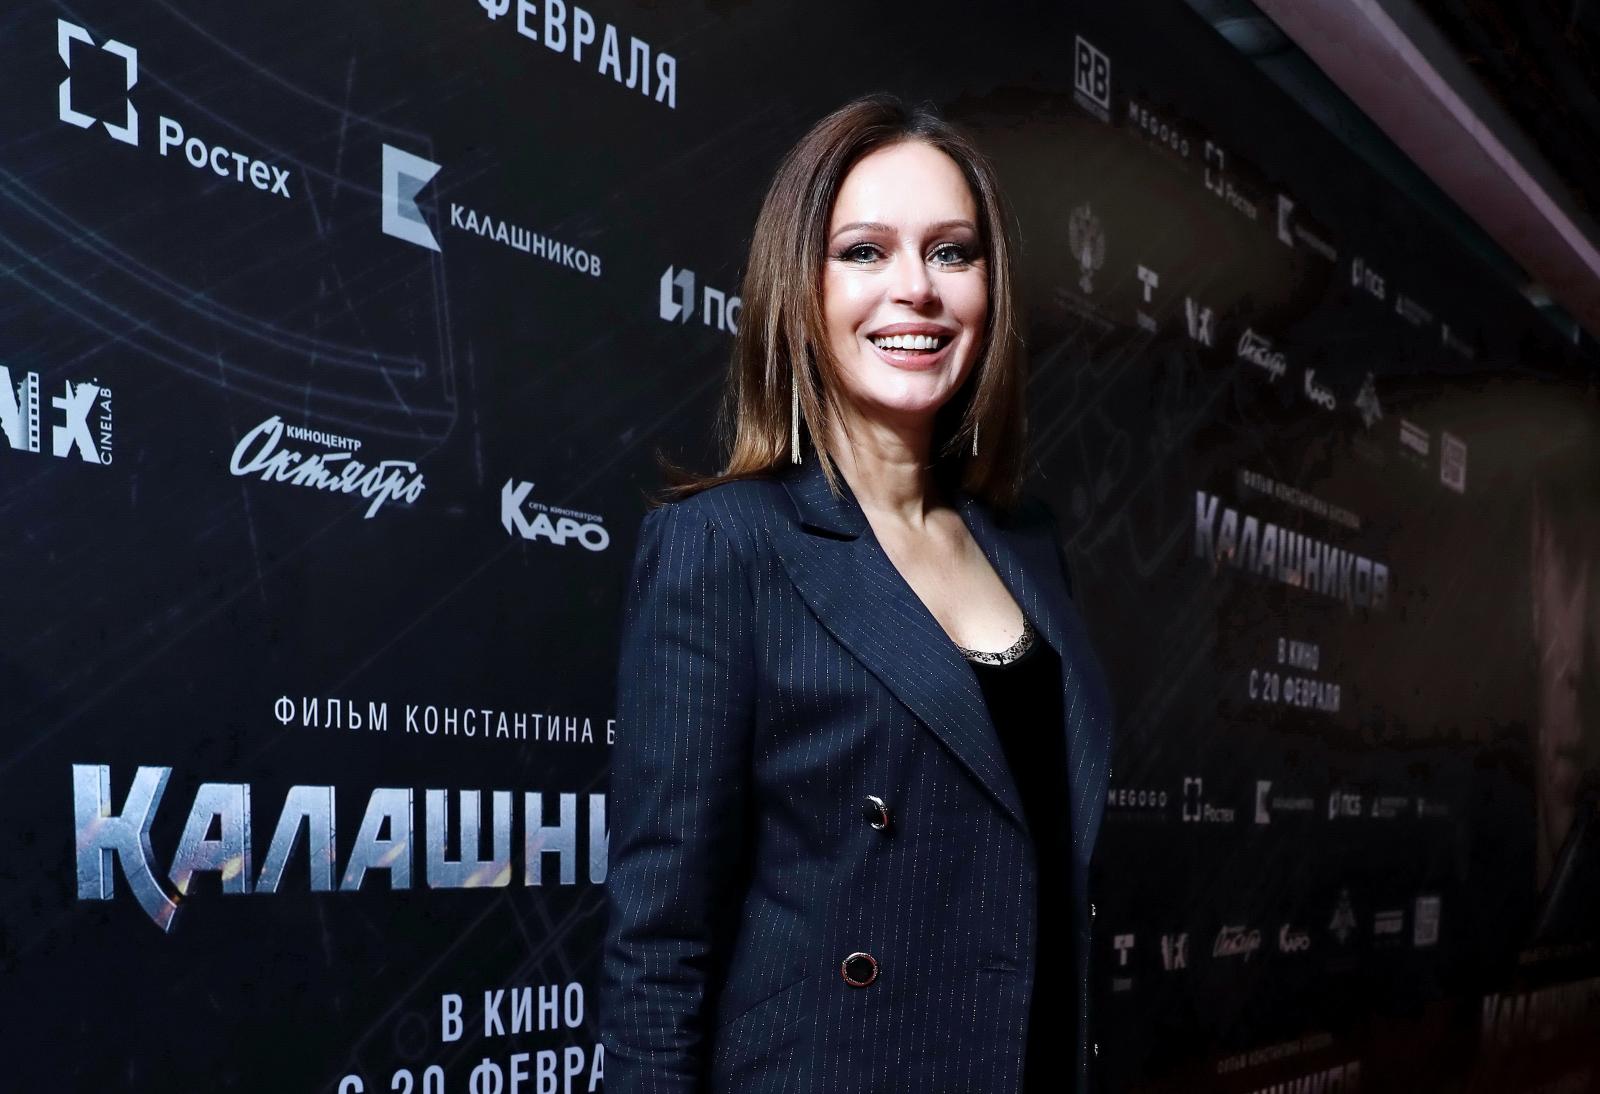 Ирина Безрукова, Марина Зудина, Клим Шипенко и другие звезды посетили премьеру фильма «Калашников»